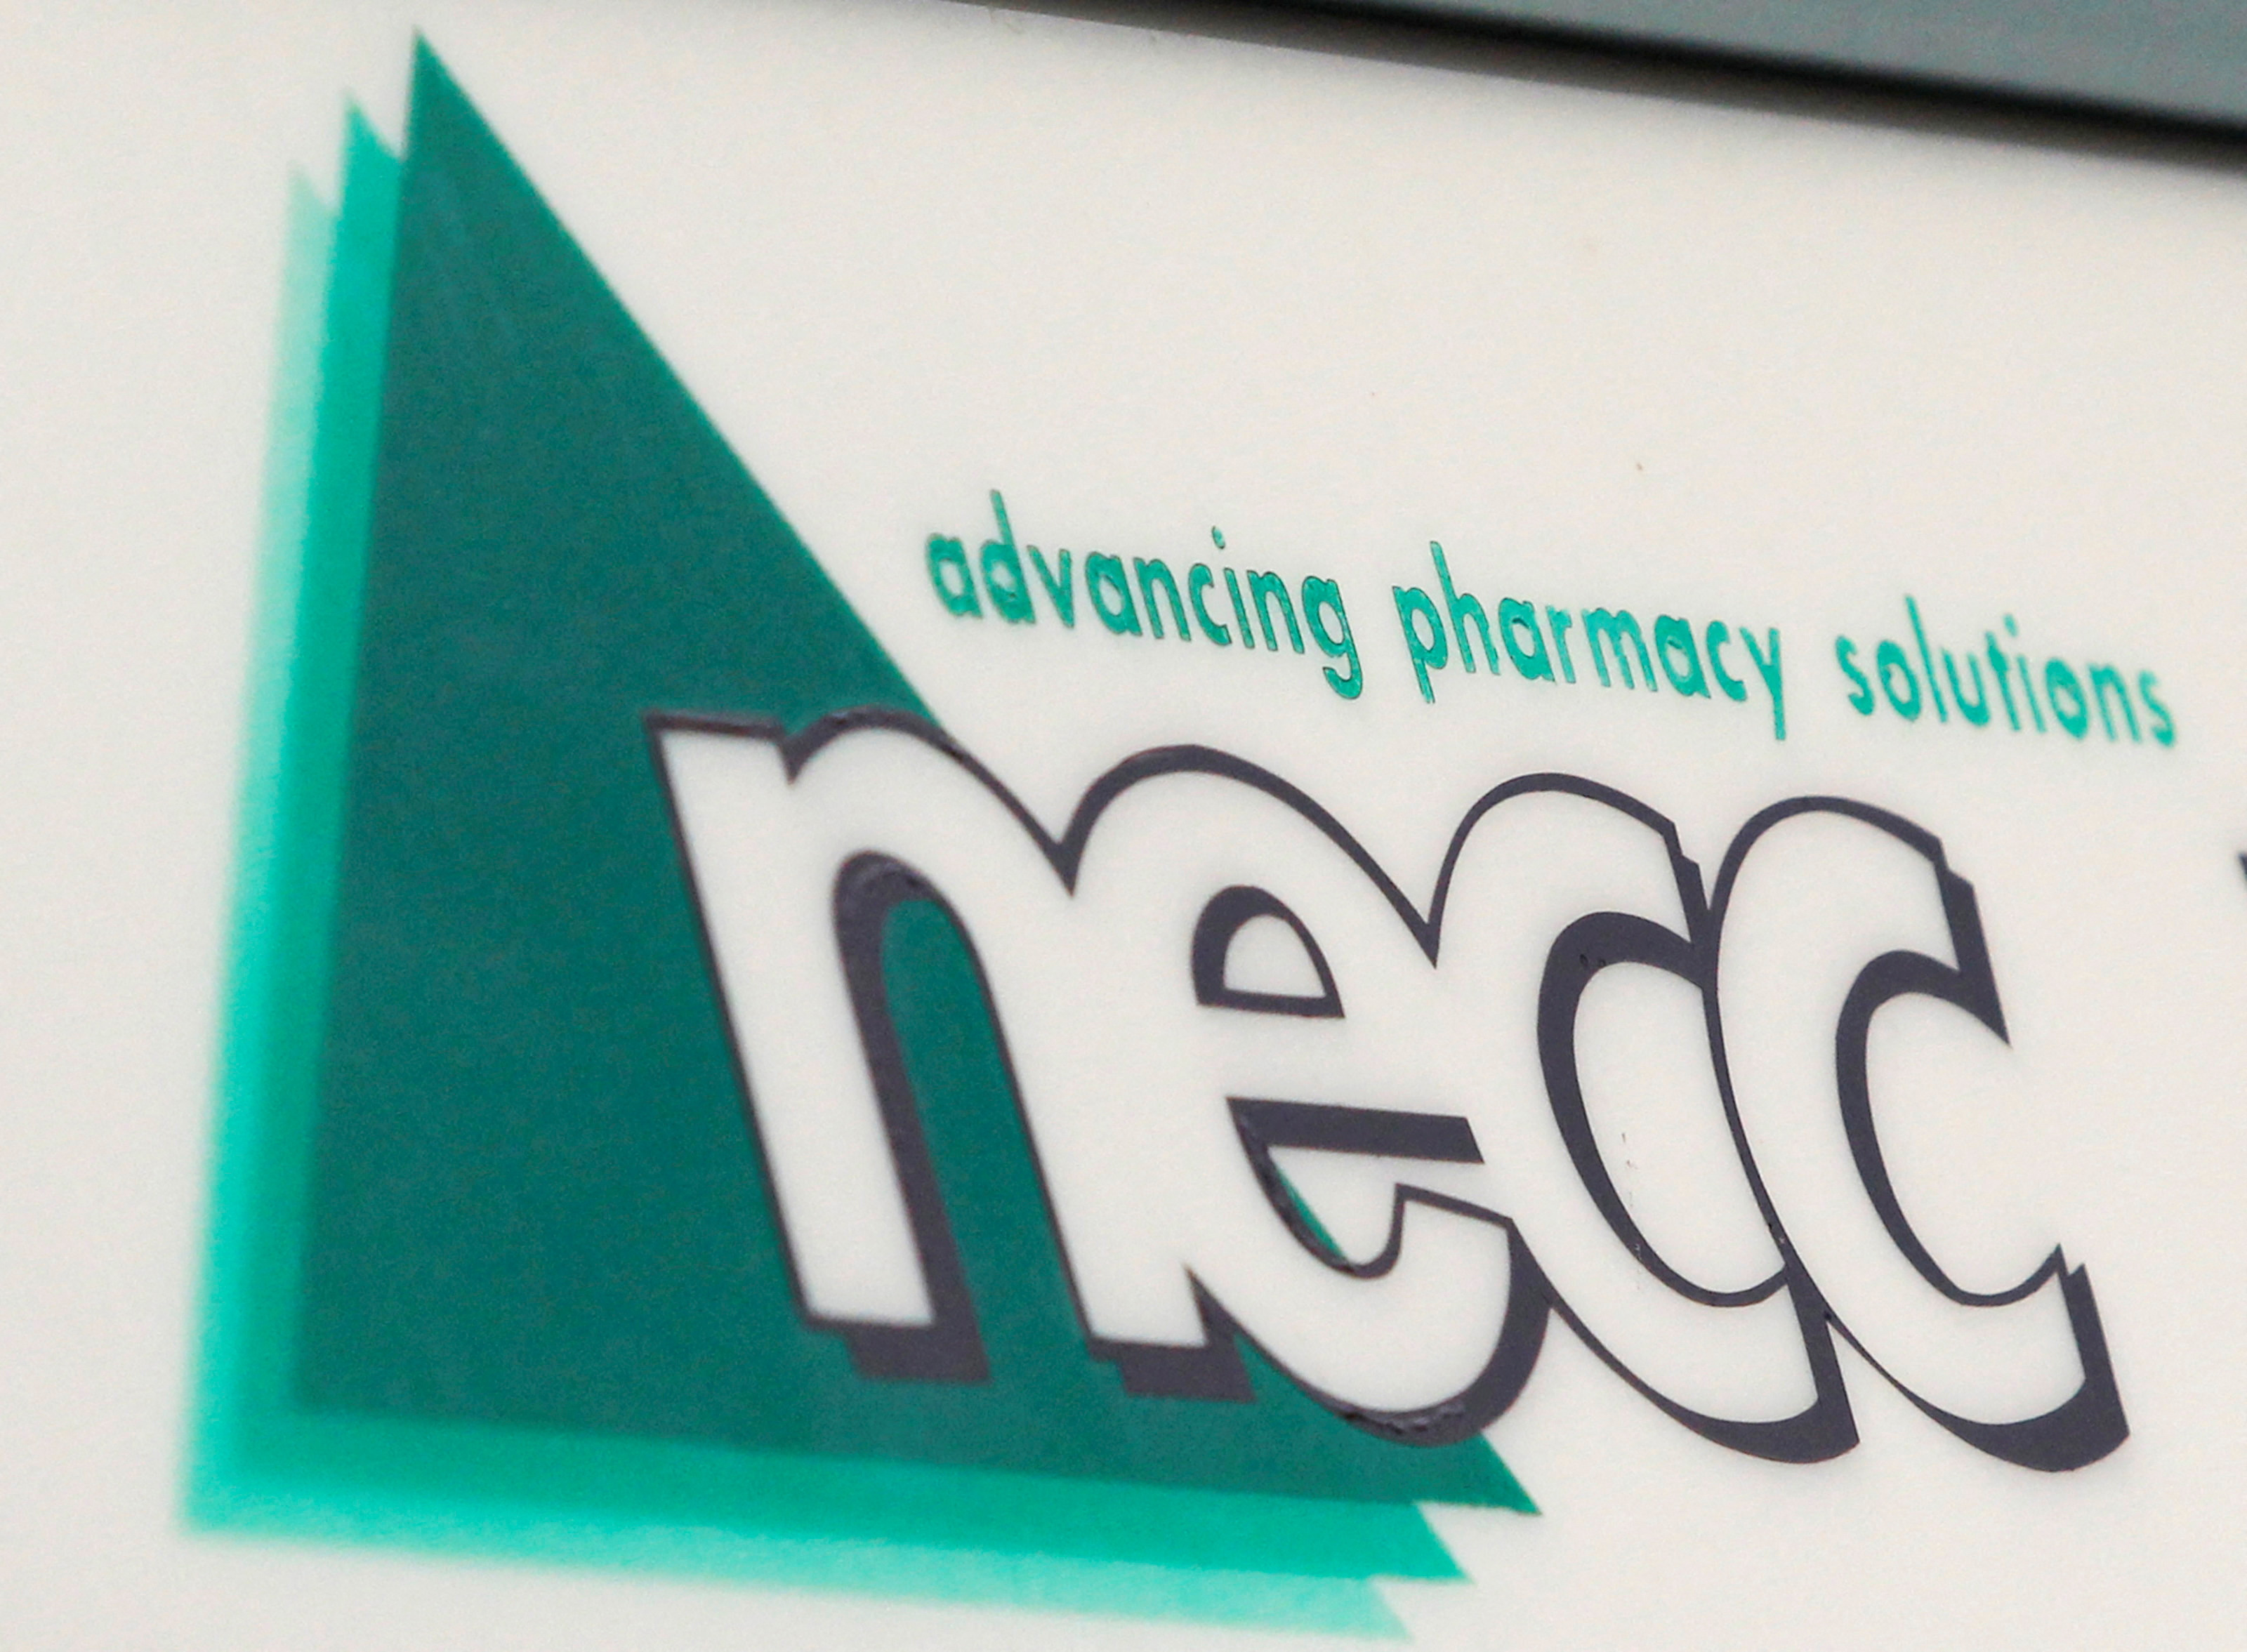 Ex-employee of pharmacy in deadly 2012 meningitis outbreak gets prison